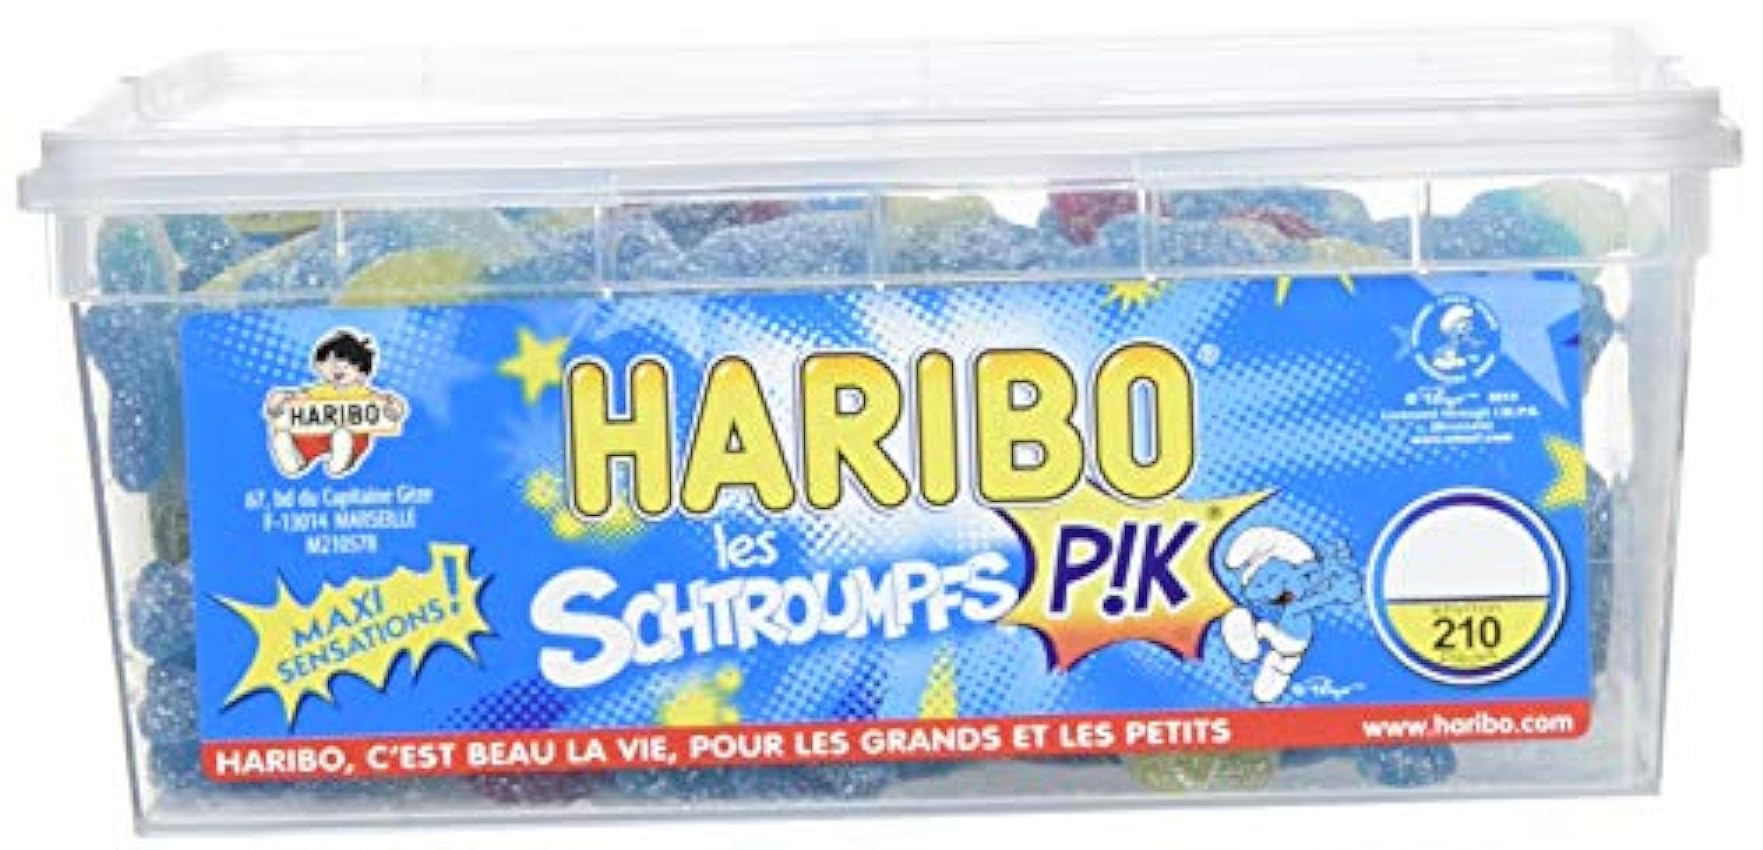 Haribo Bonbon Gélifié les Schtroumpfs Pik x 210 Pièces 